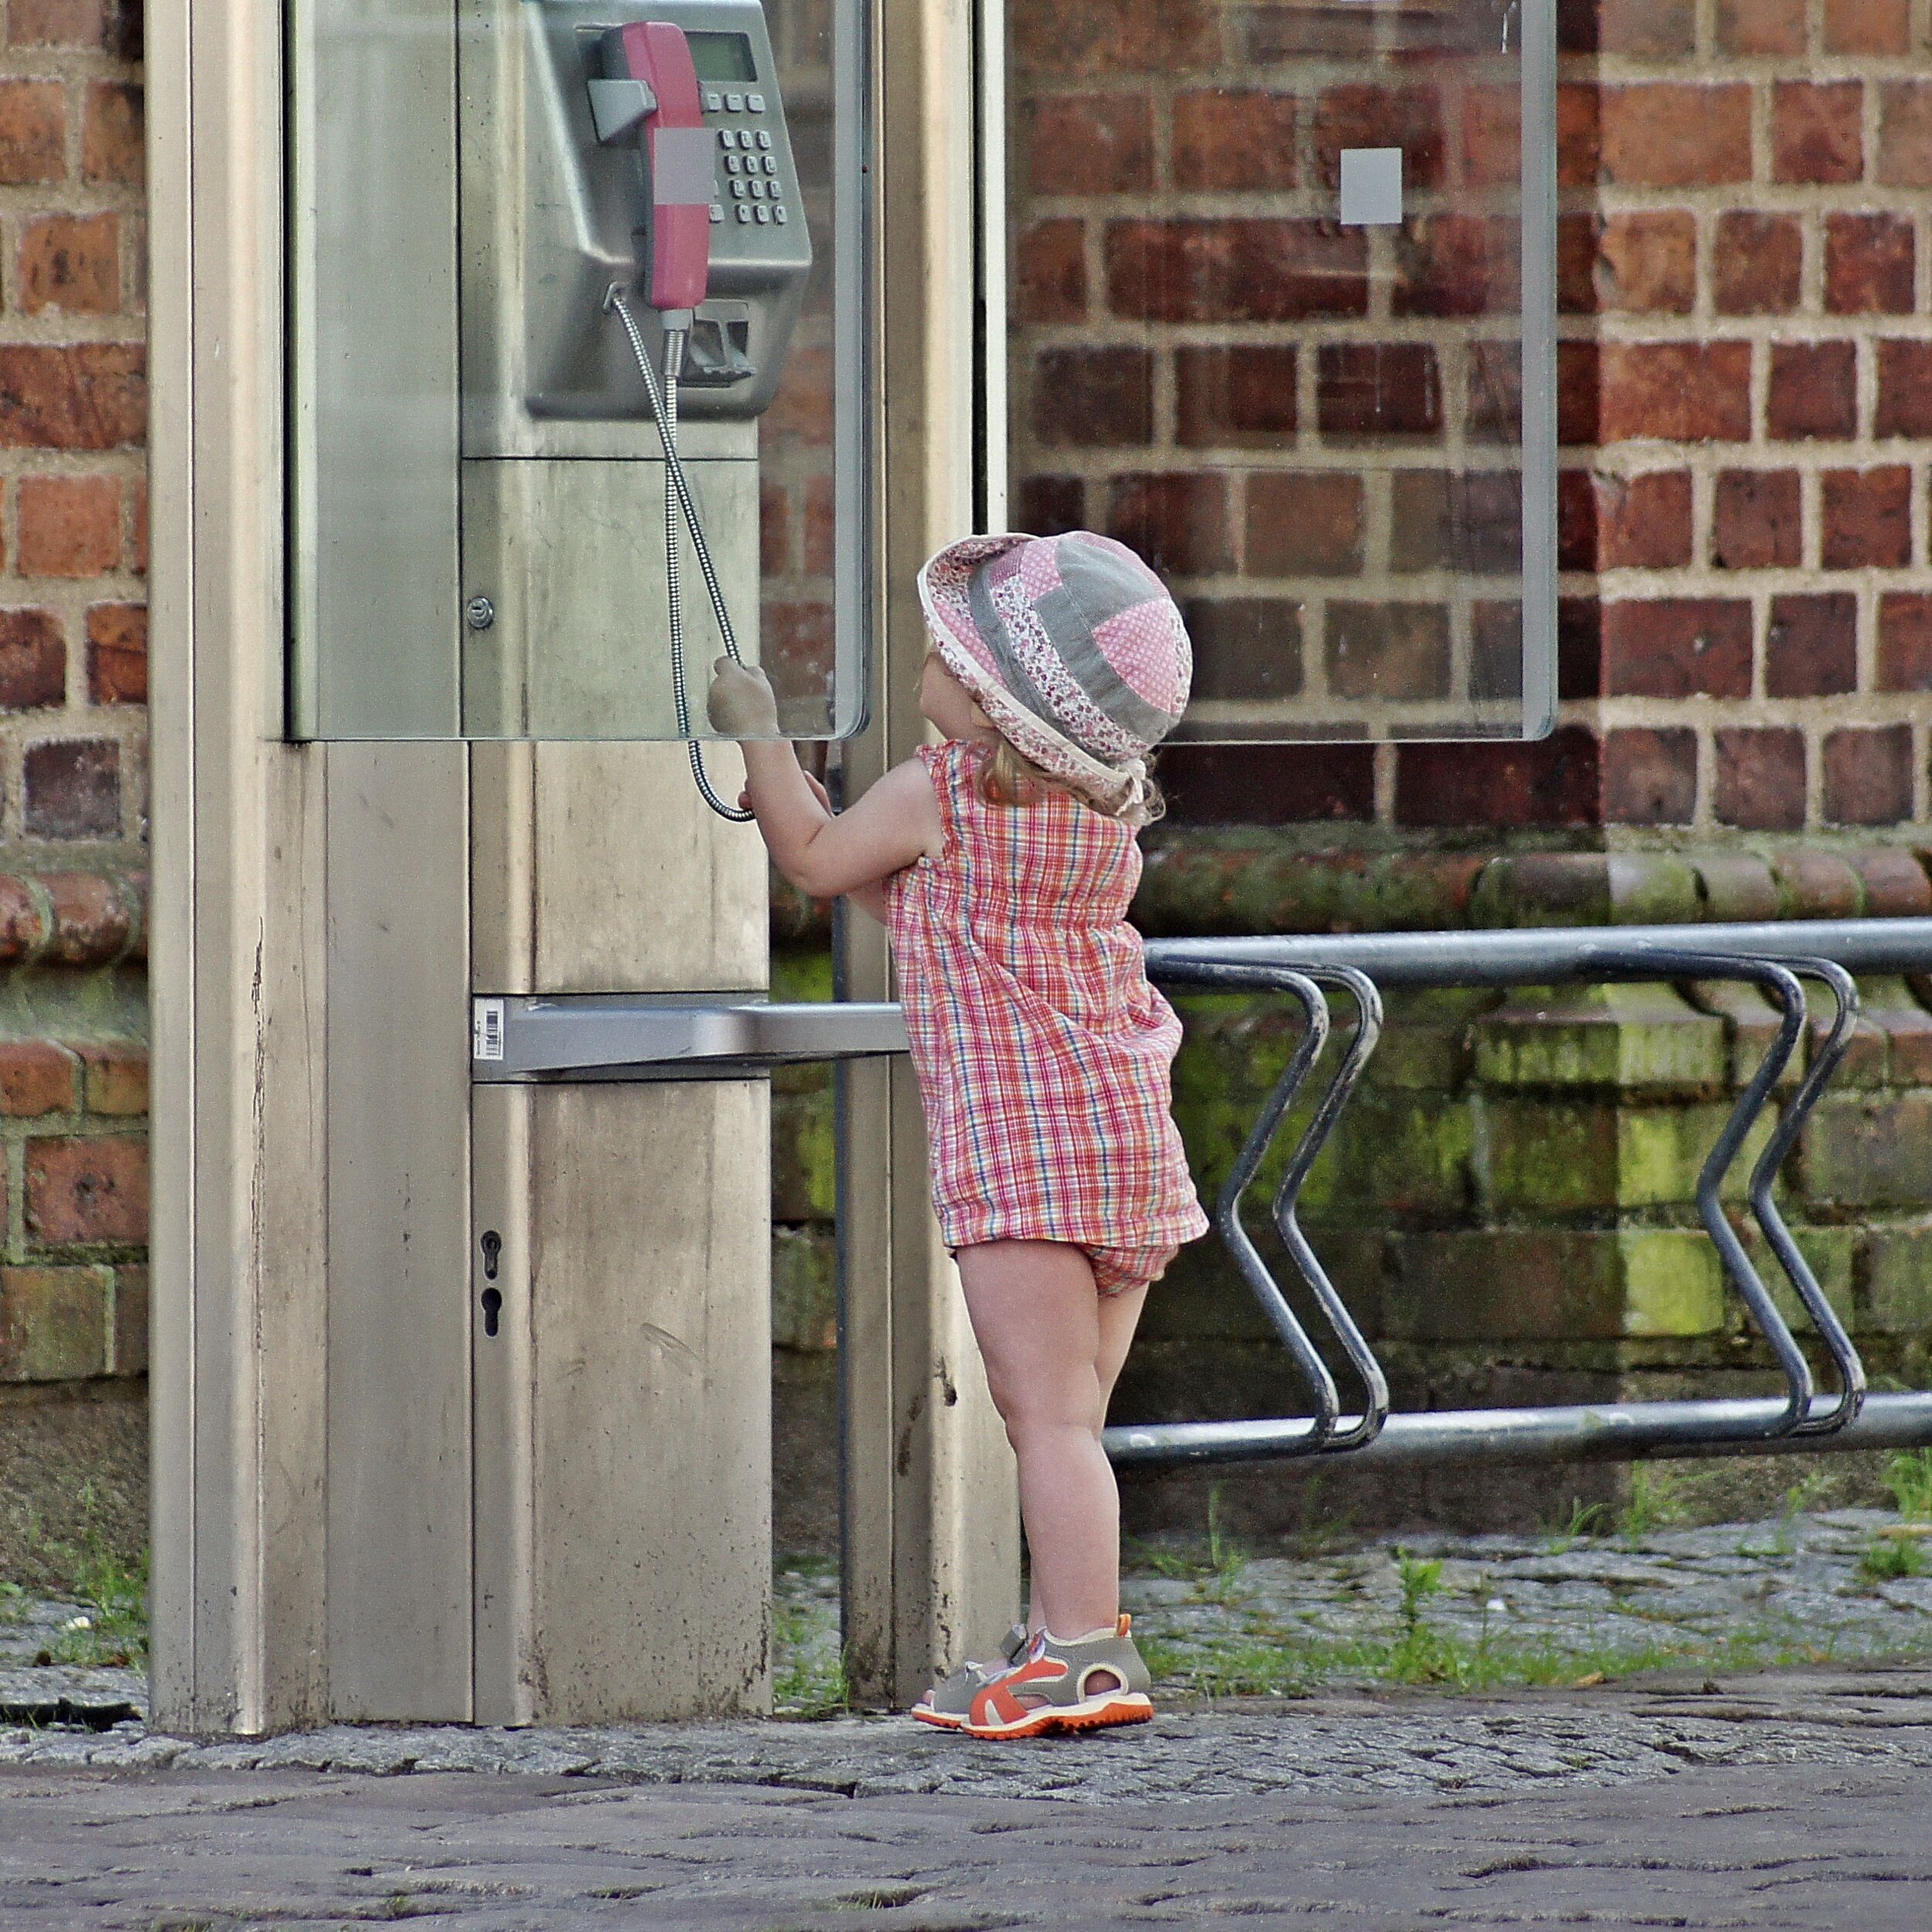 Ein Kind zieht an der Schnur eines öffentlichen Telefons.